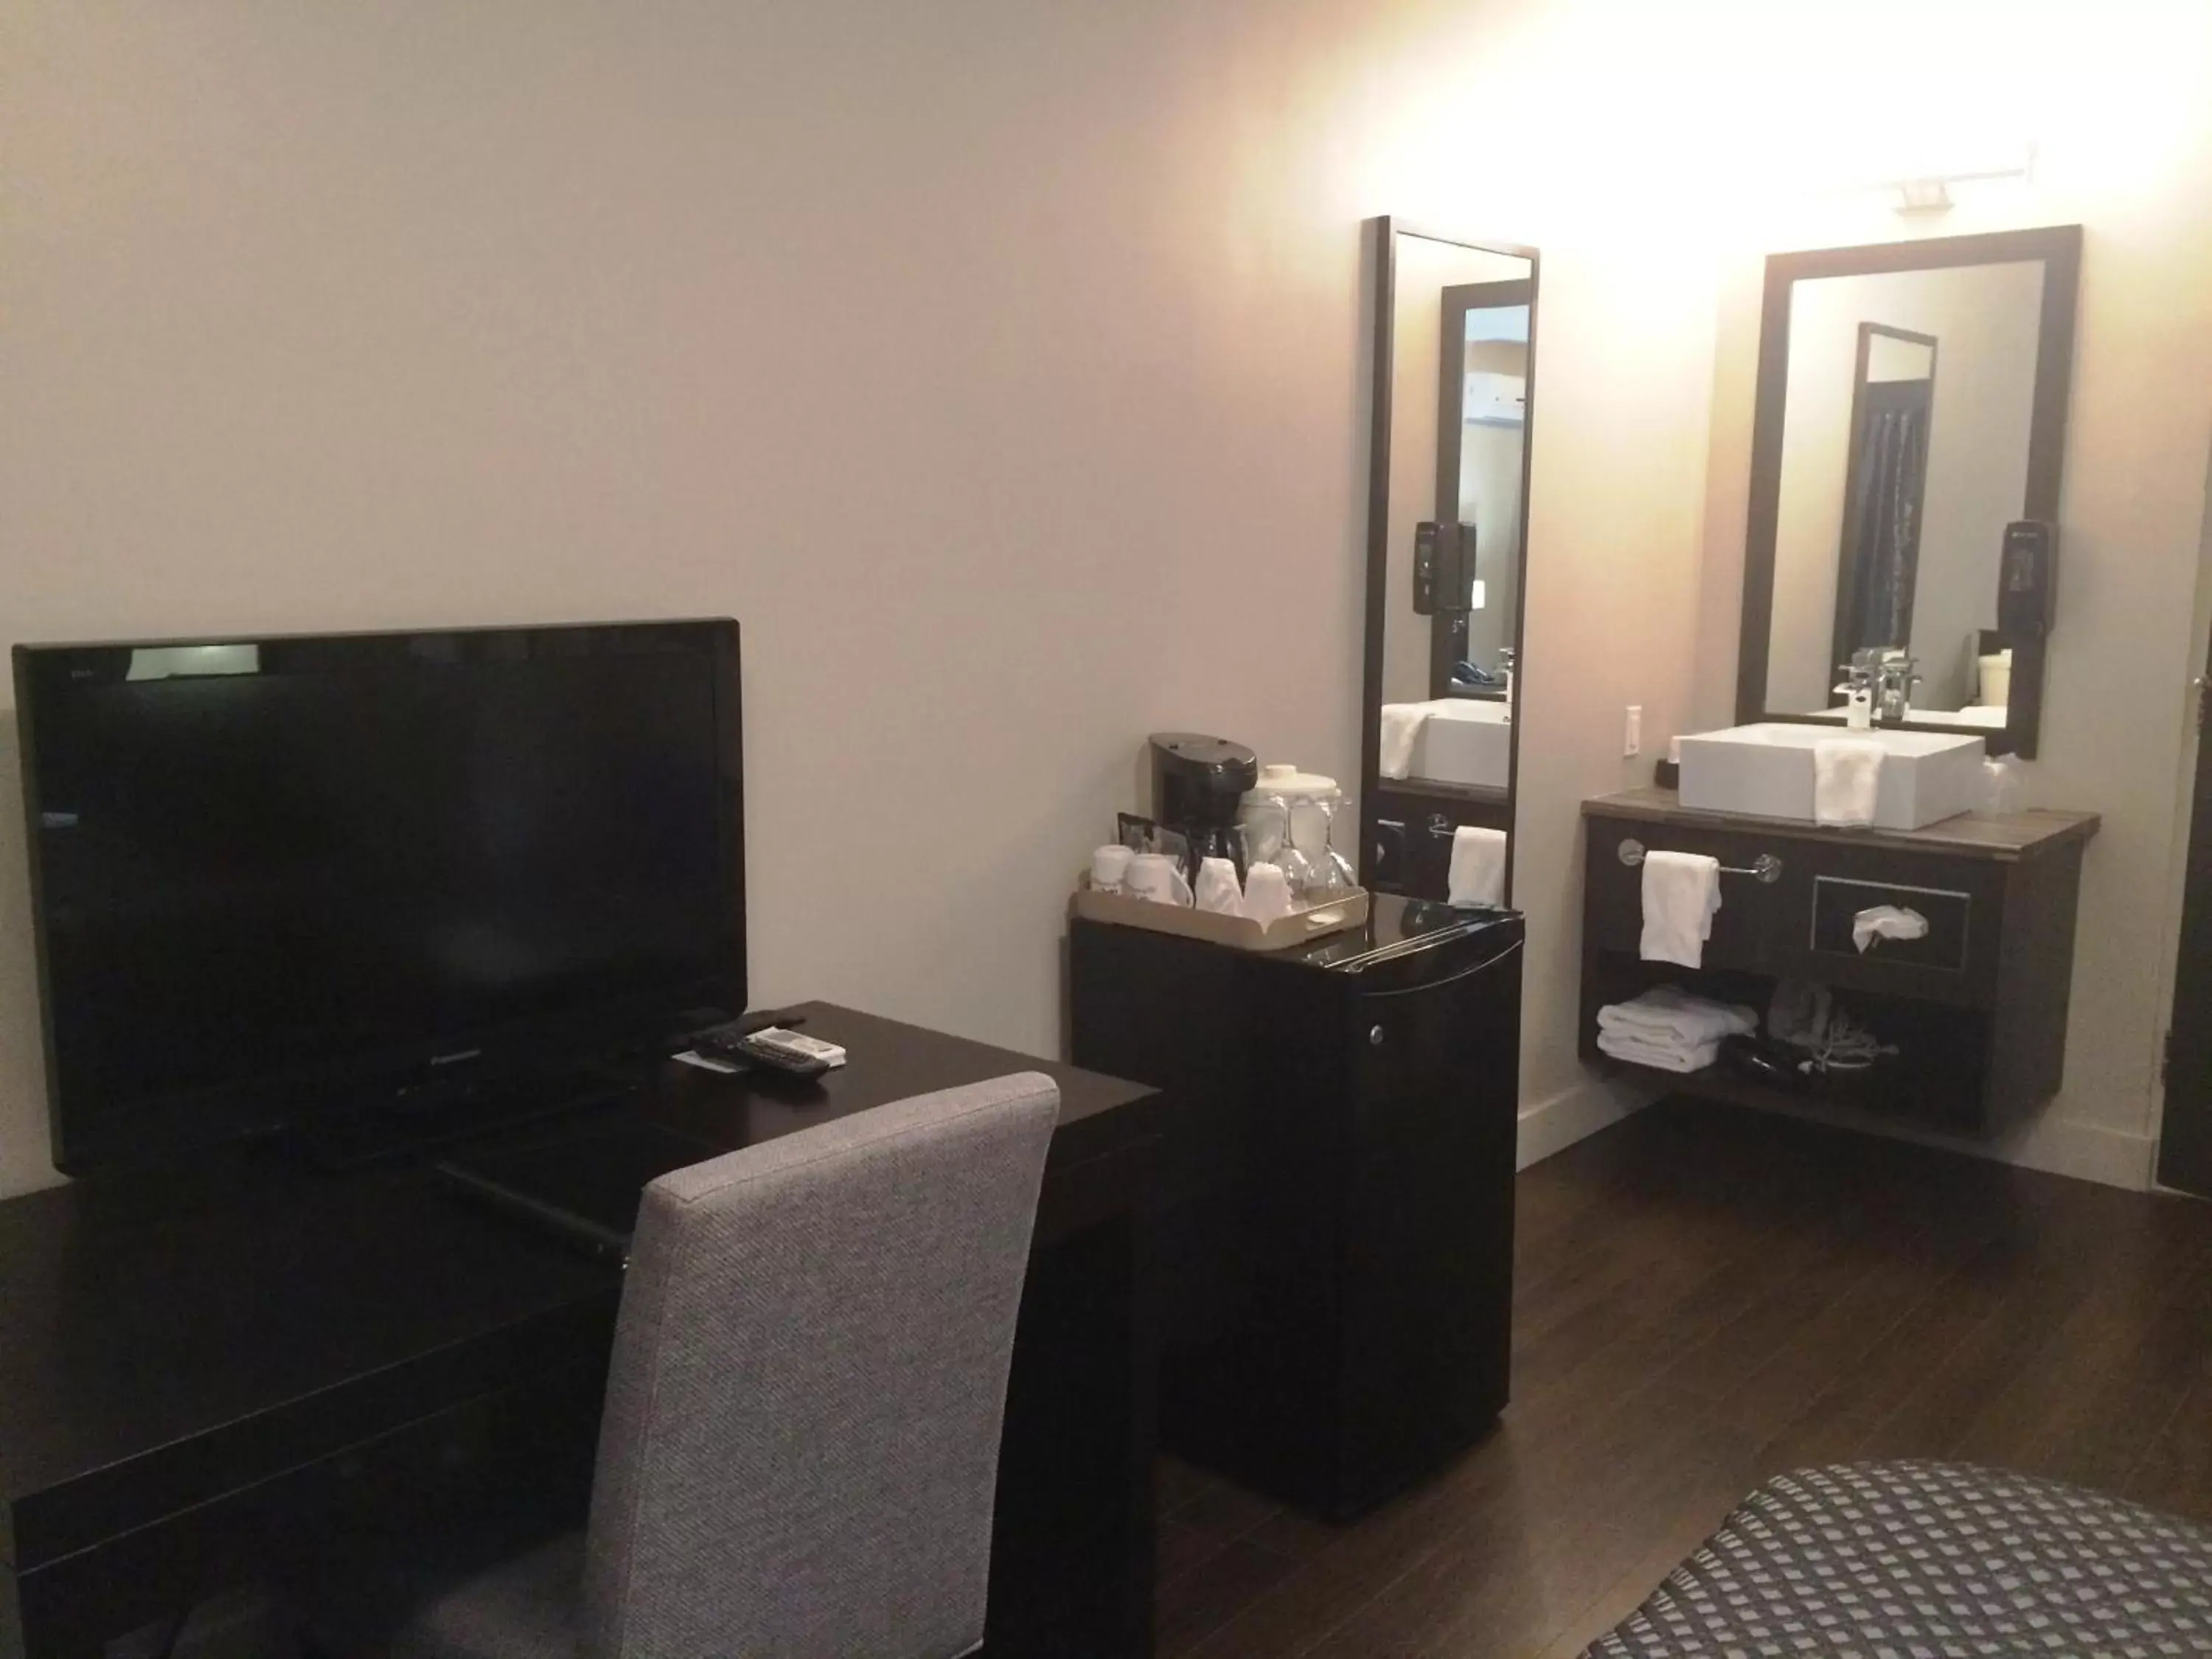 Bathroom, TV/Entertainment Center in Hotel De La Borealie